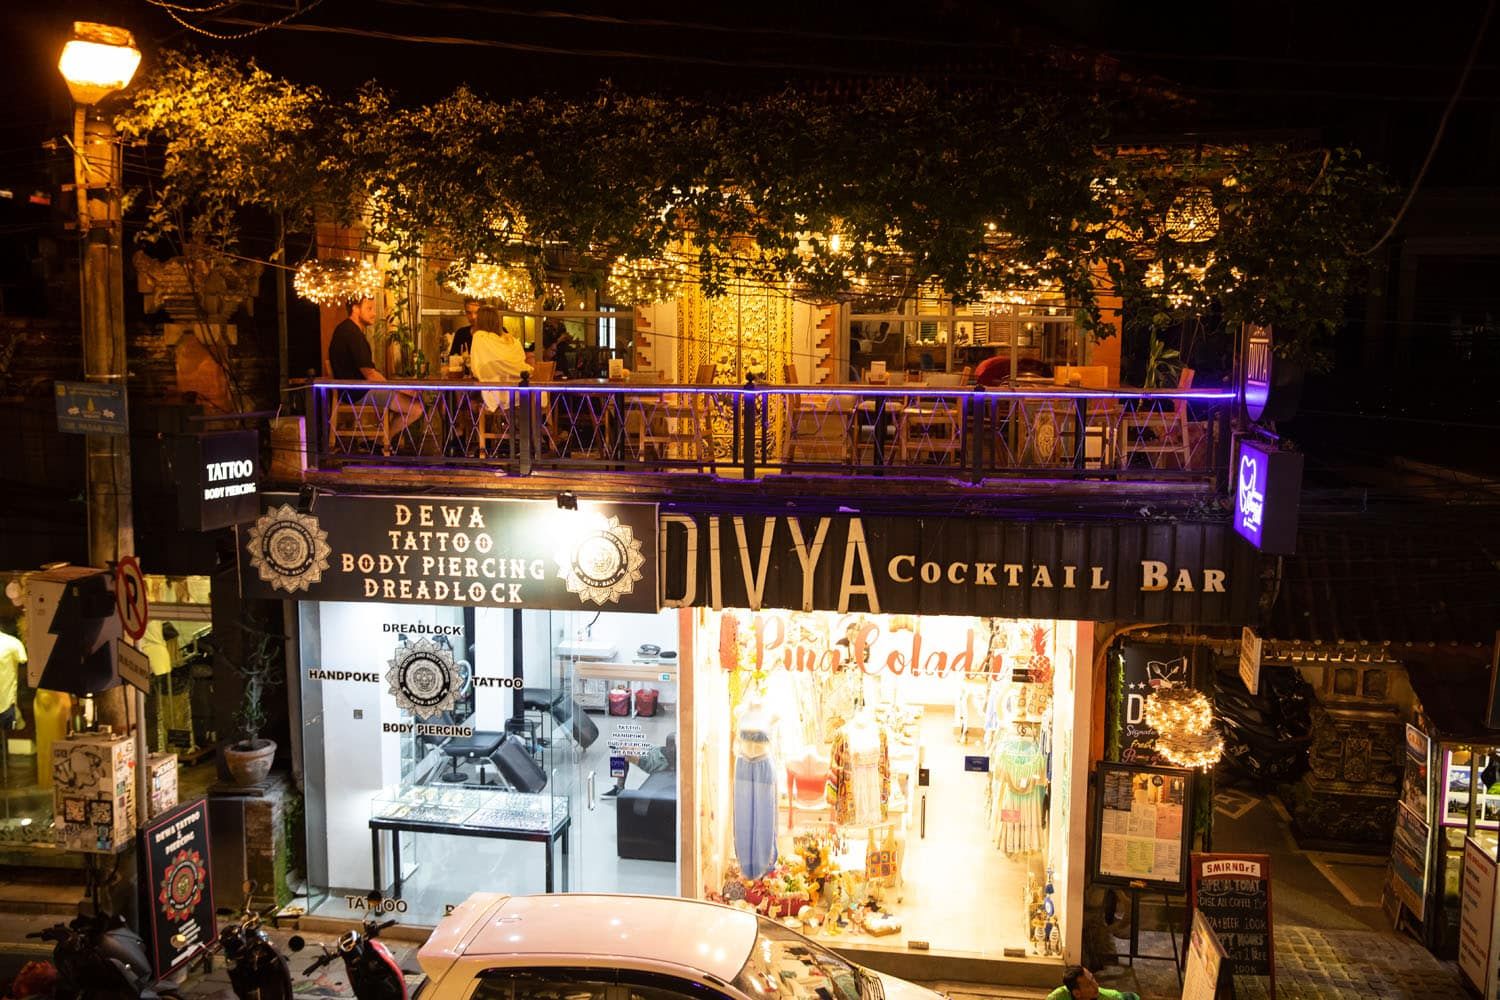 Divya Cocktail Bar